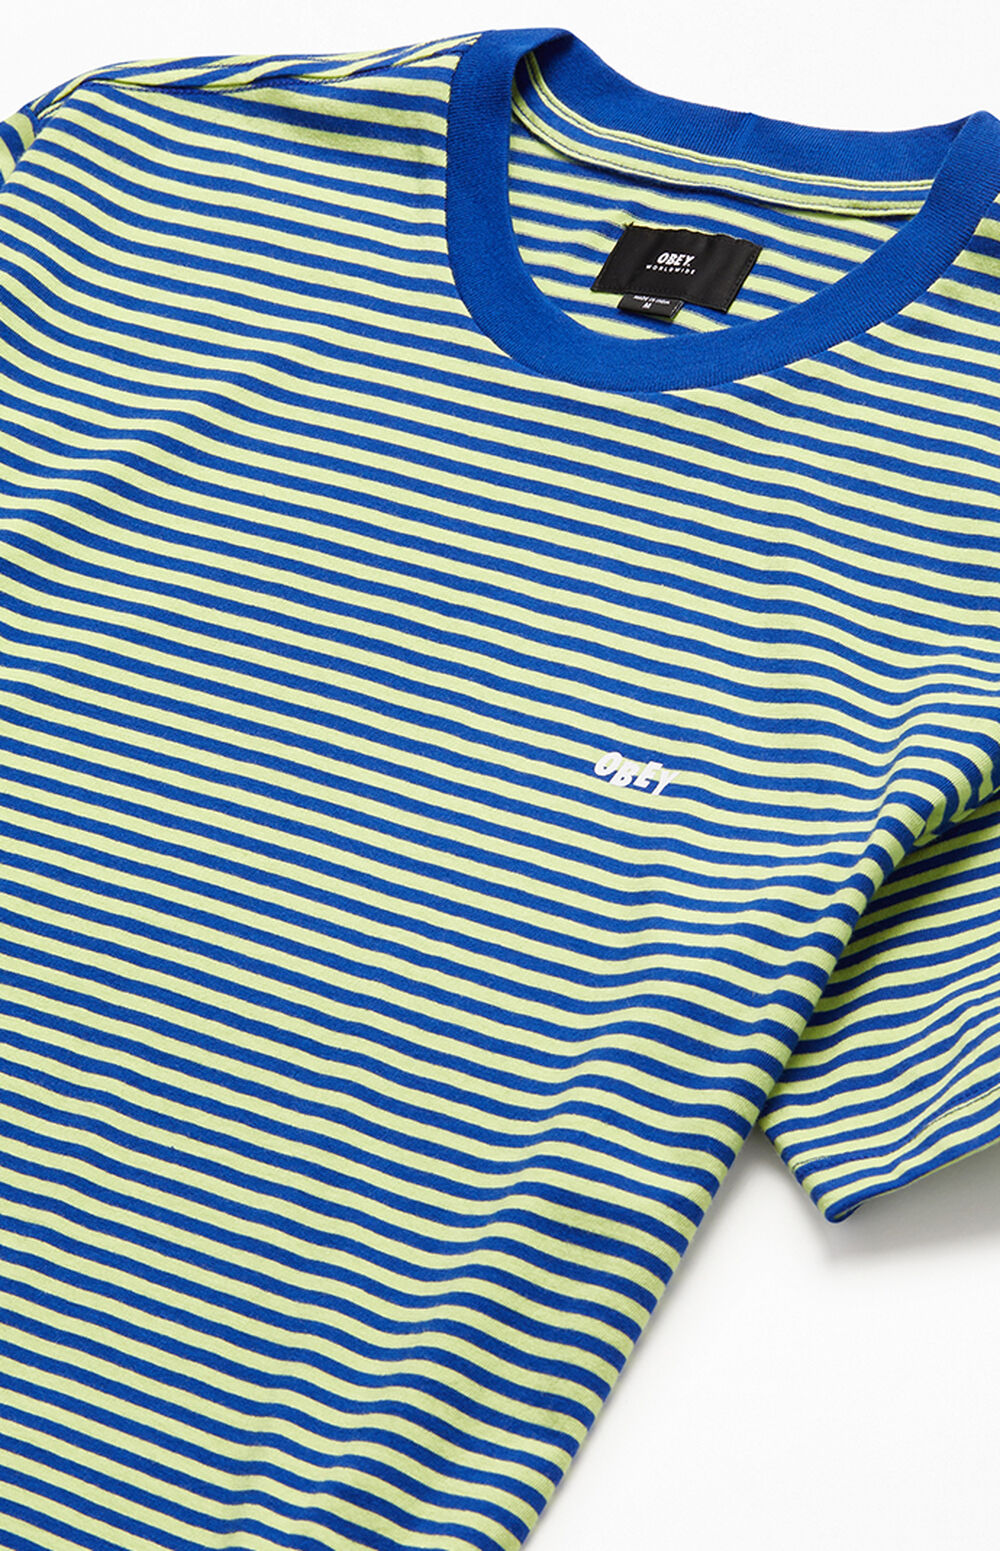 Obey Apex Striped T-Shirt | PacSun